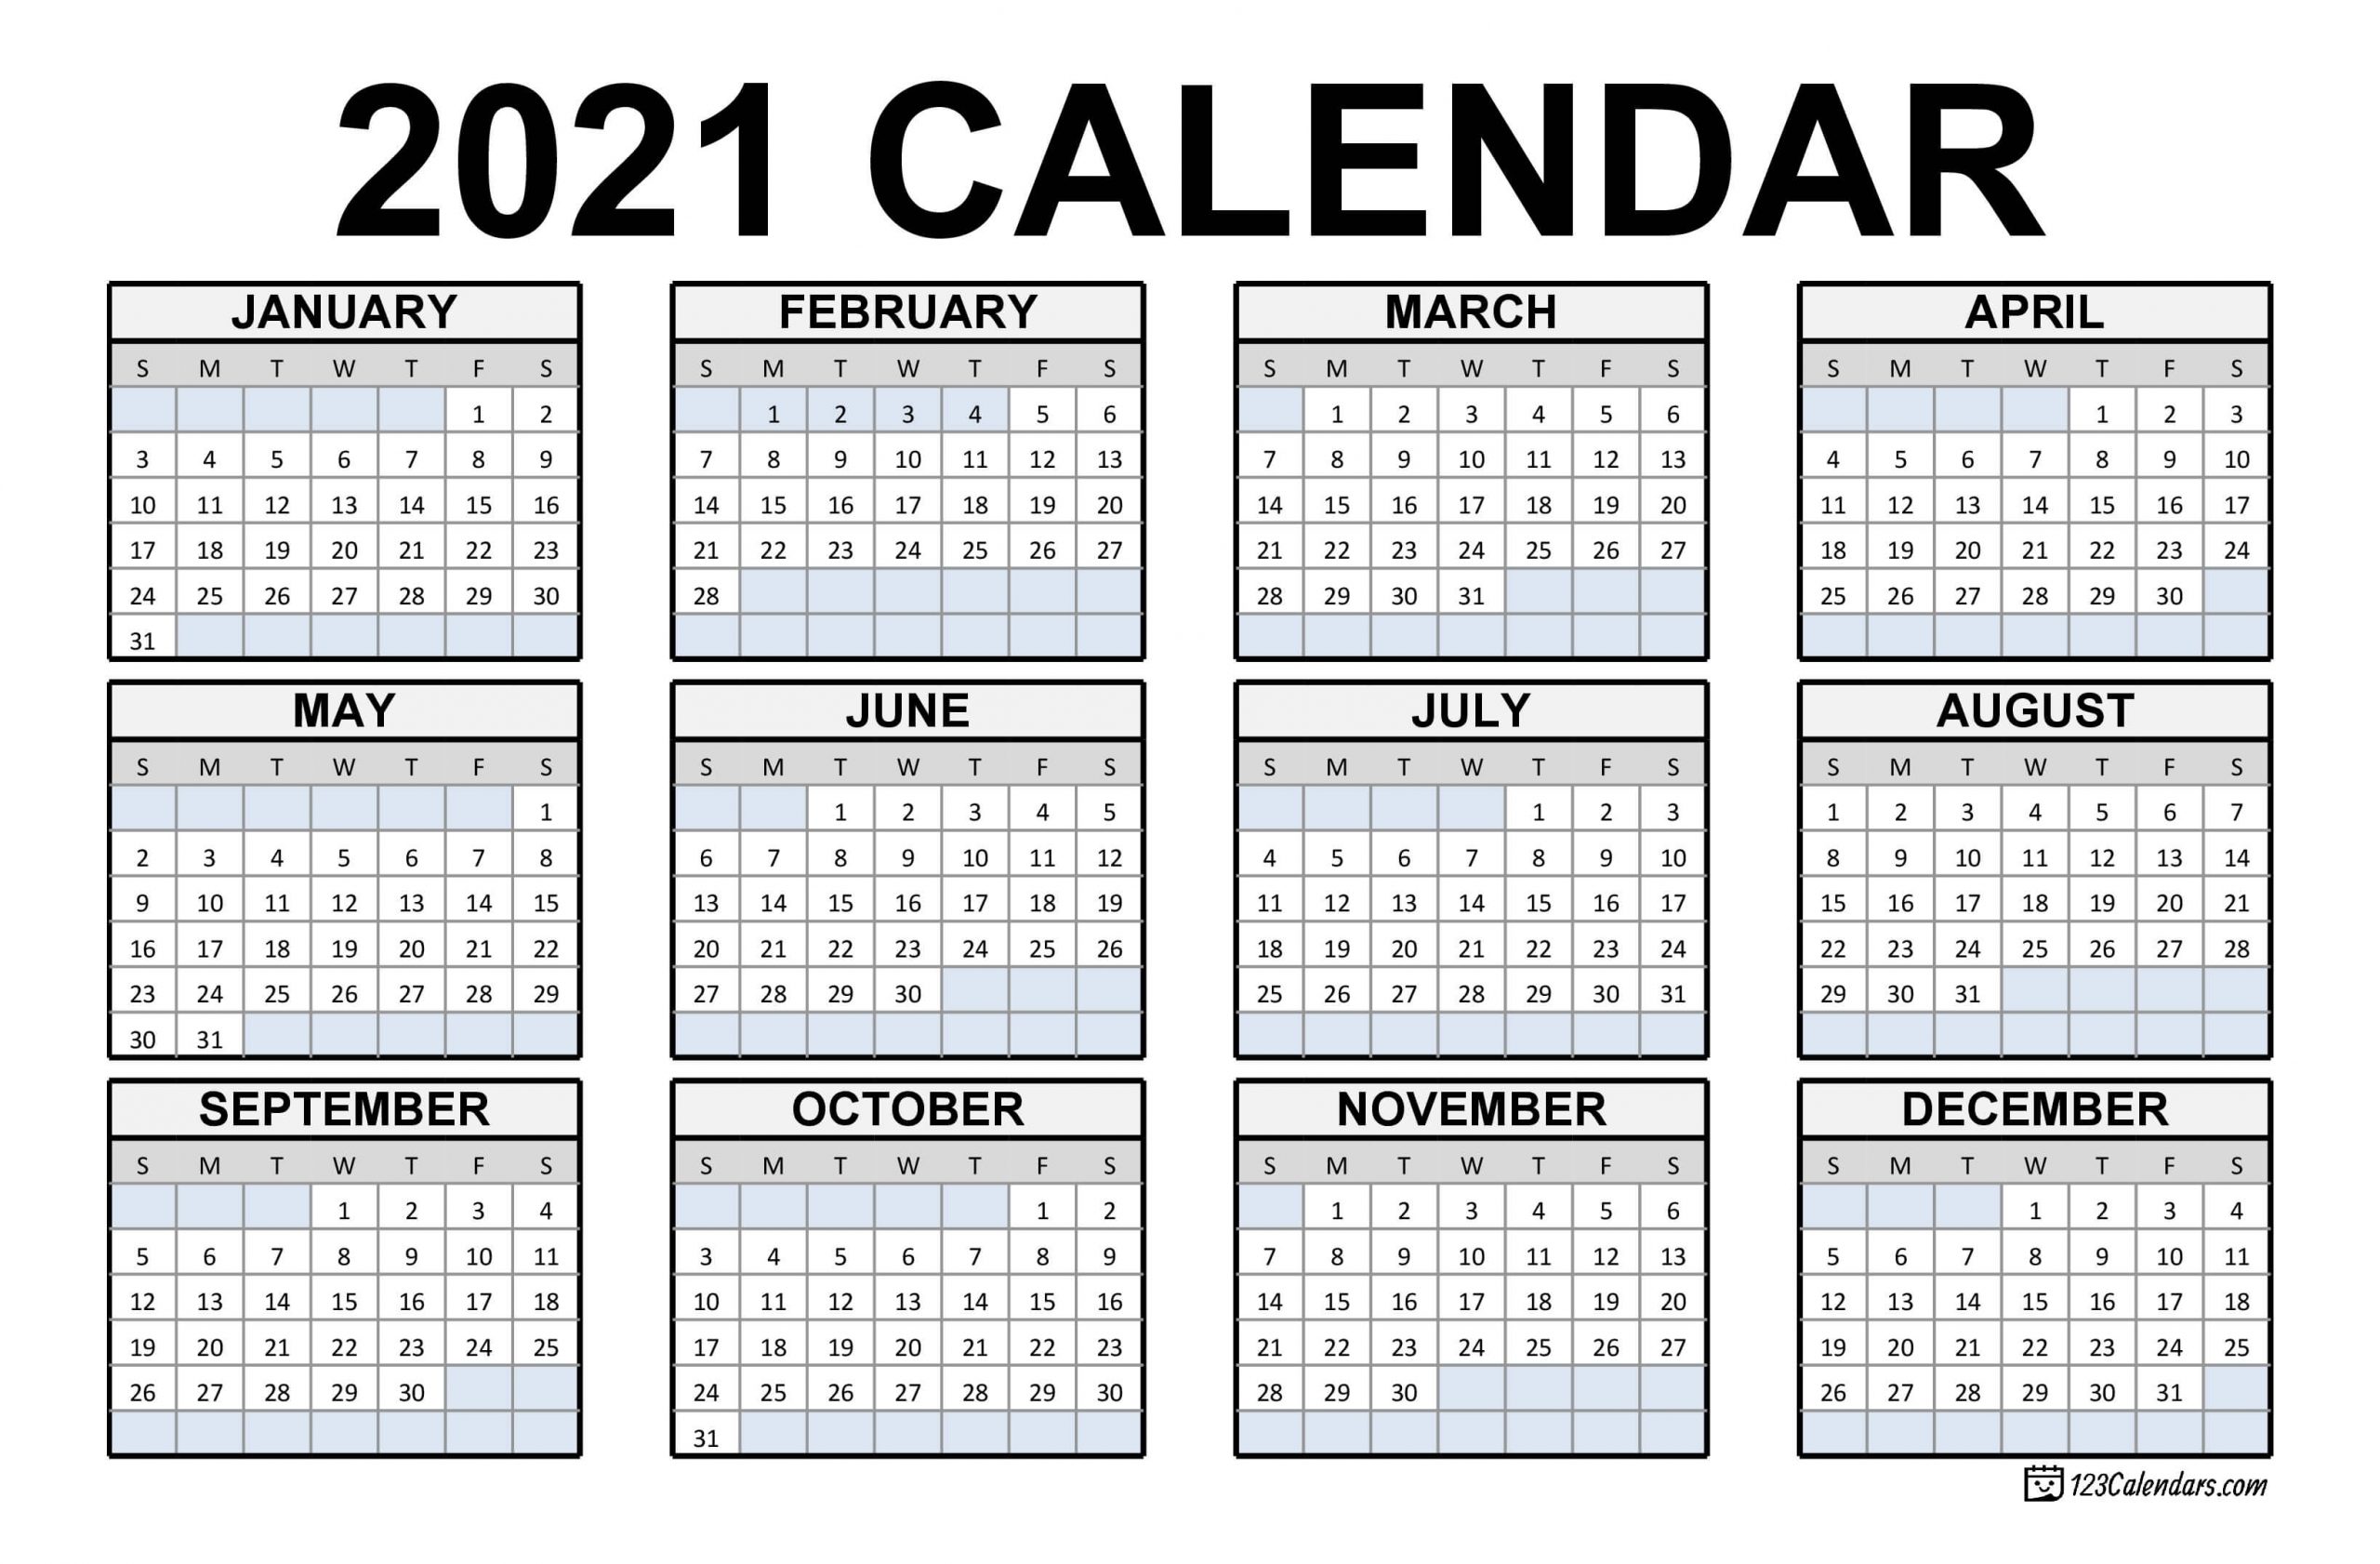 Get 2021 December Calendar Legal Size